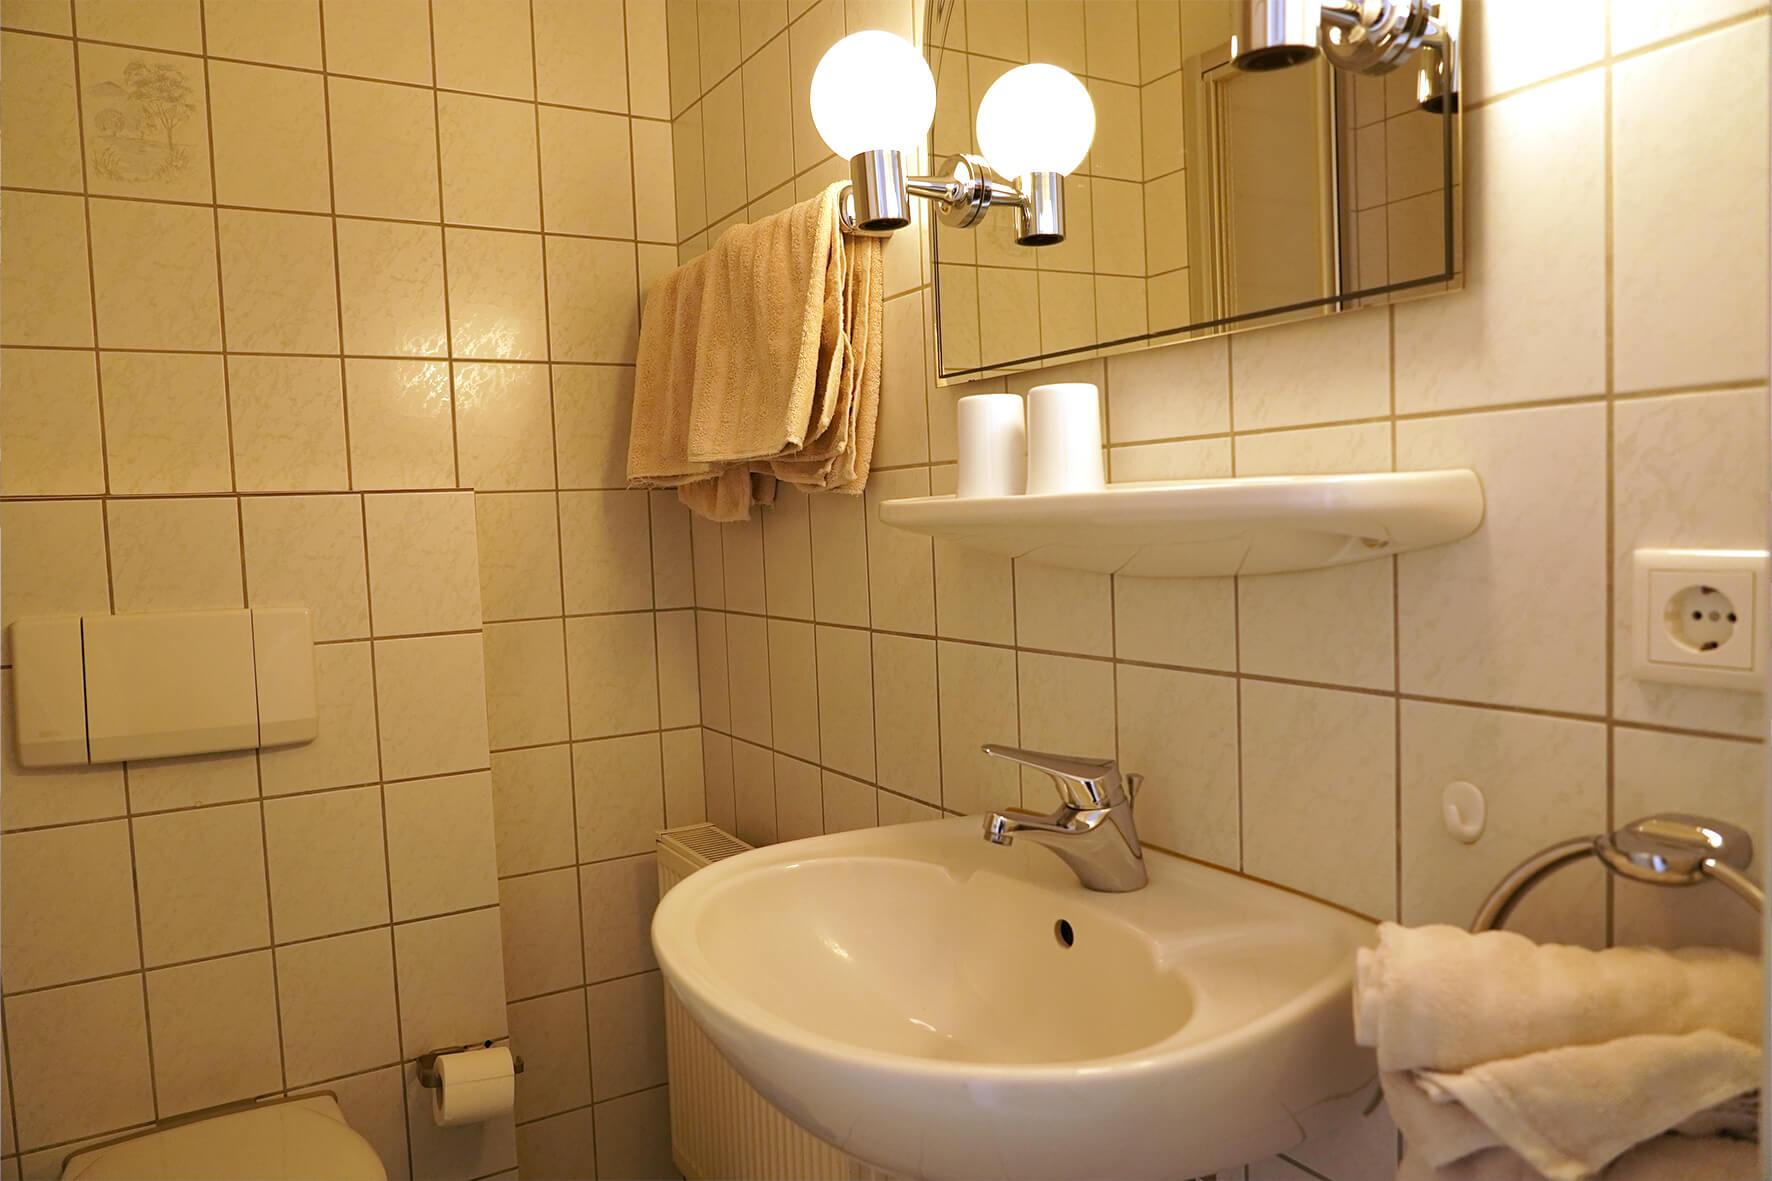 Aufnahme eines gefliesten Badezimmers in weiß mit Waschbecken und Spiegel